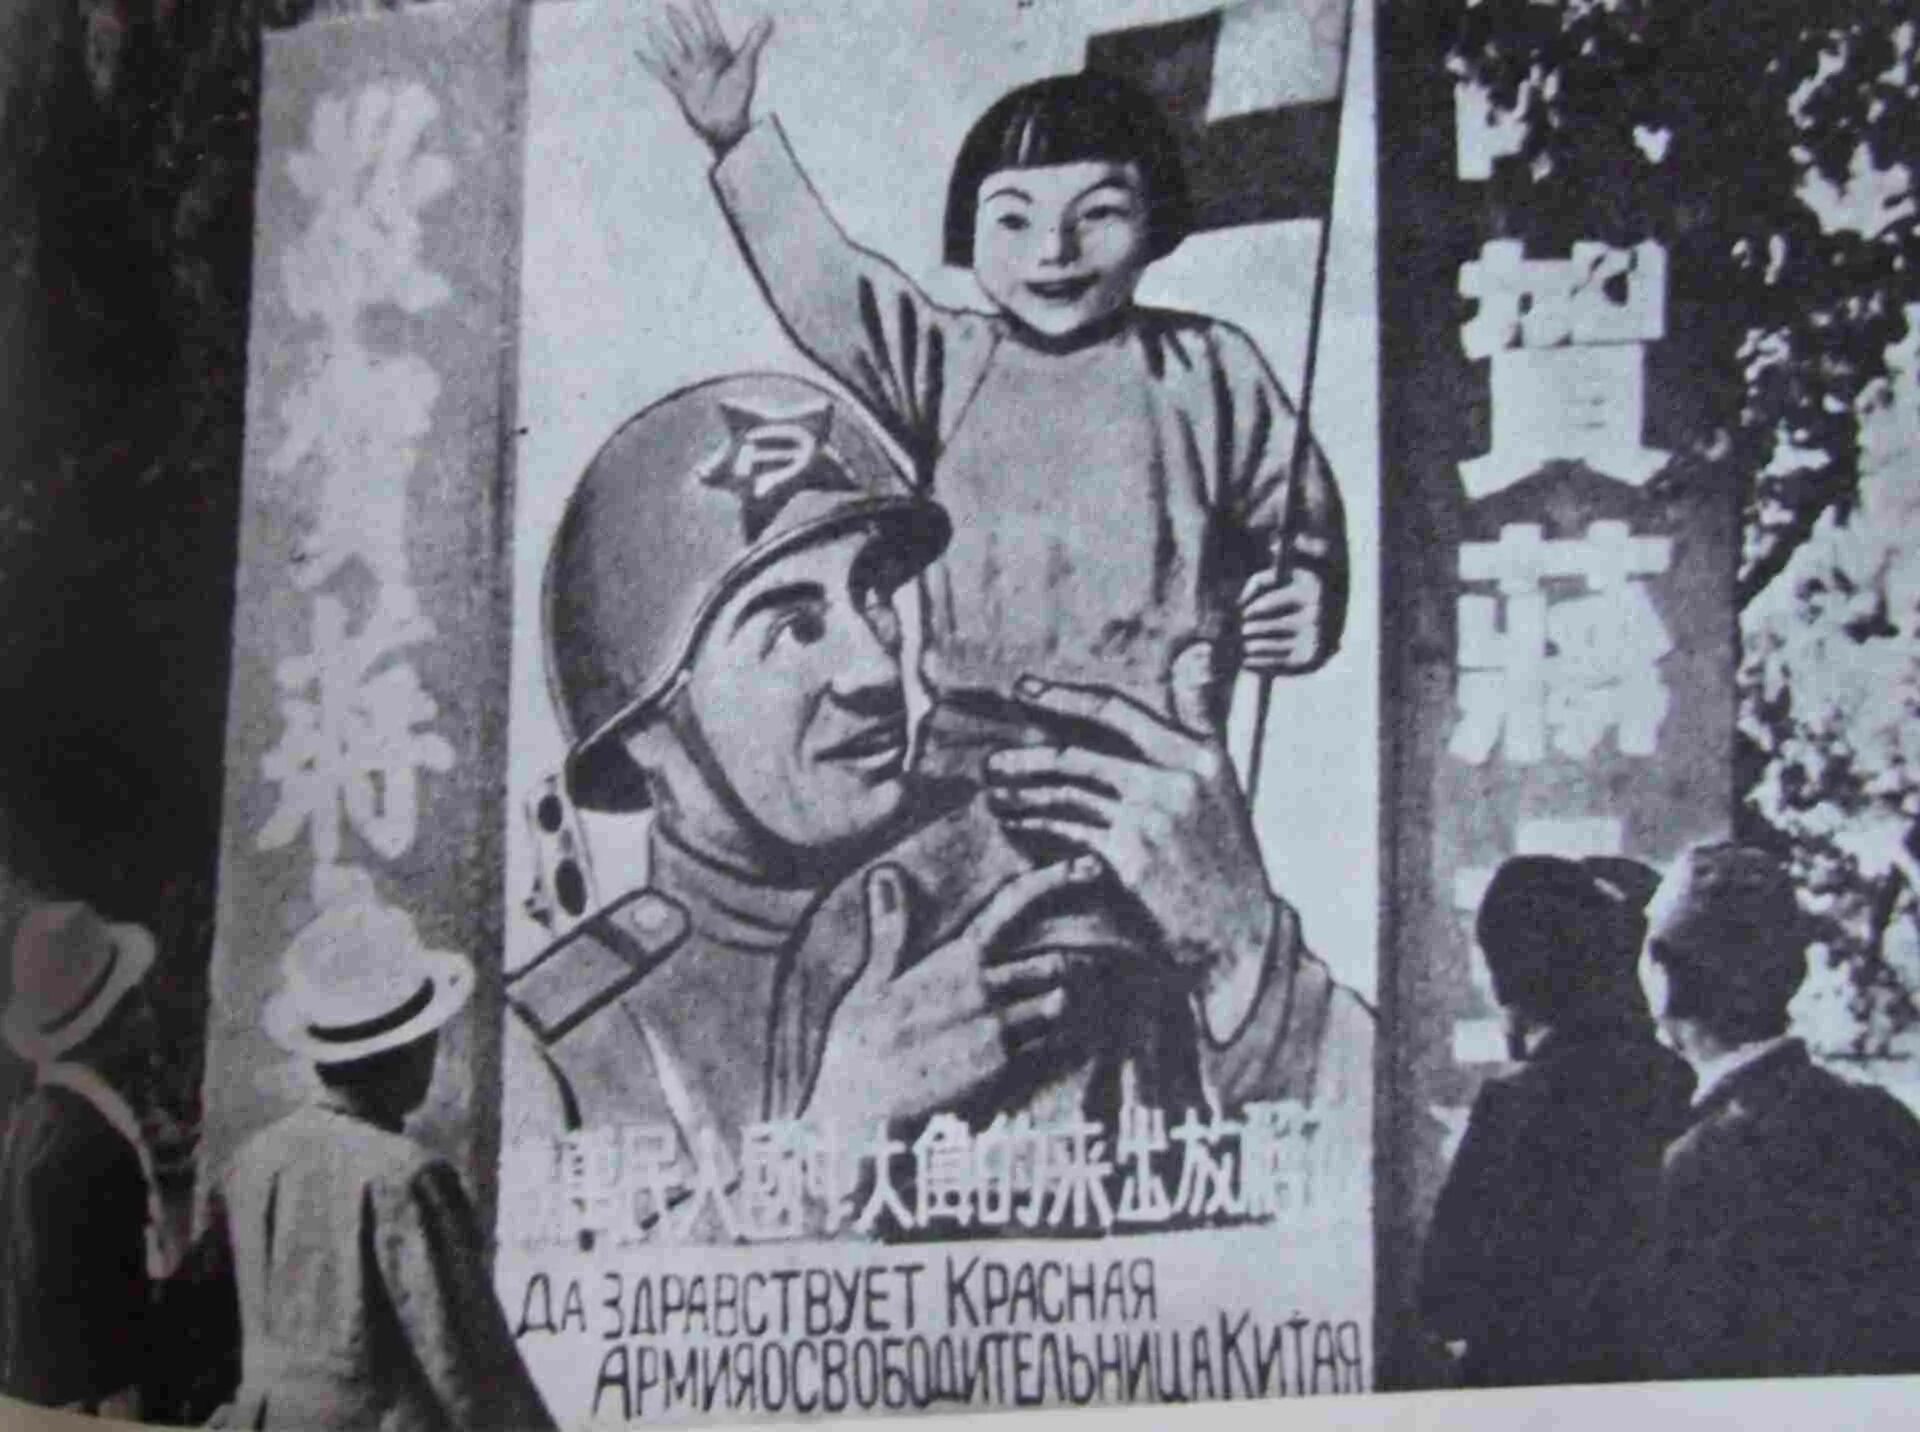 16 сентября 1945 парад в харбине. Харбин парад Победы 1945. Парад Победы в Харбине 1945 год. Парад советских войск в Харбине в 1945 году. Харбин советские солдаты.